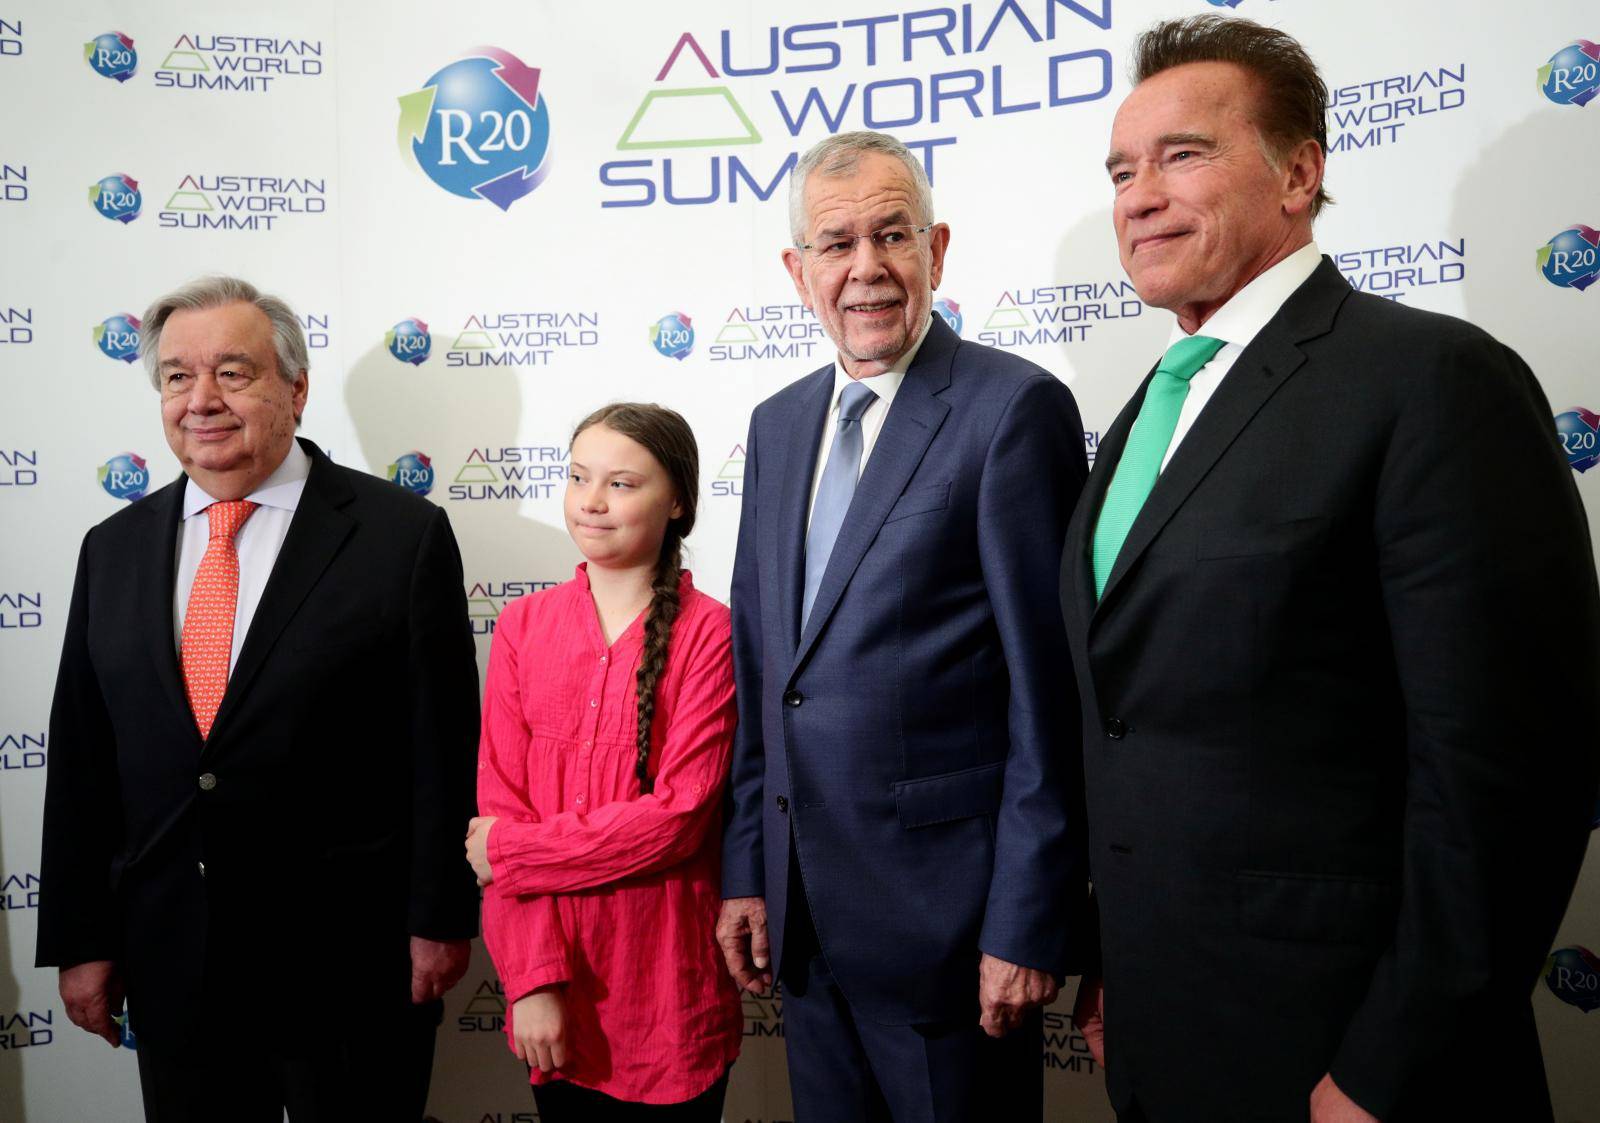 R20 Austrian World Summit